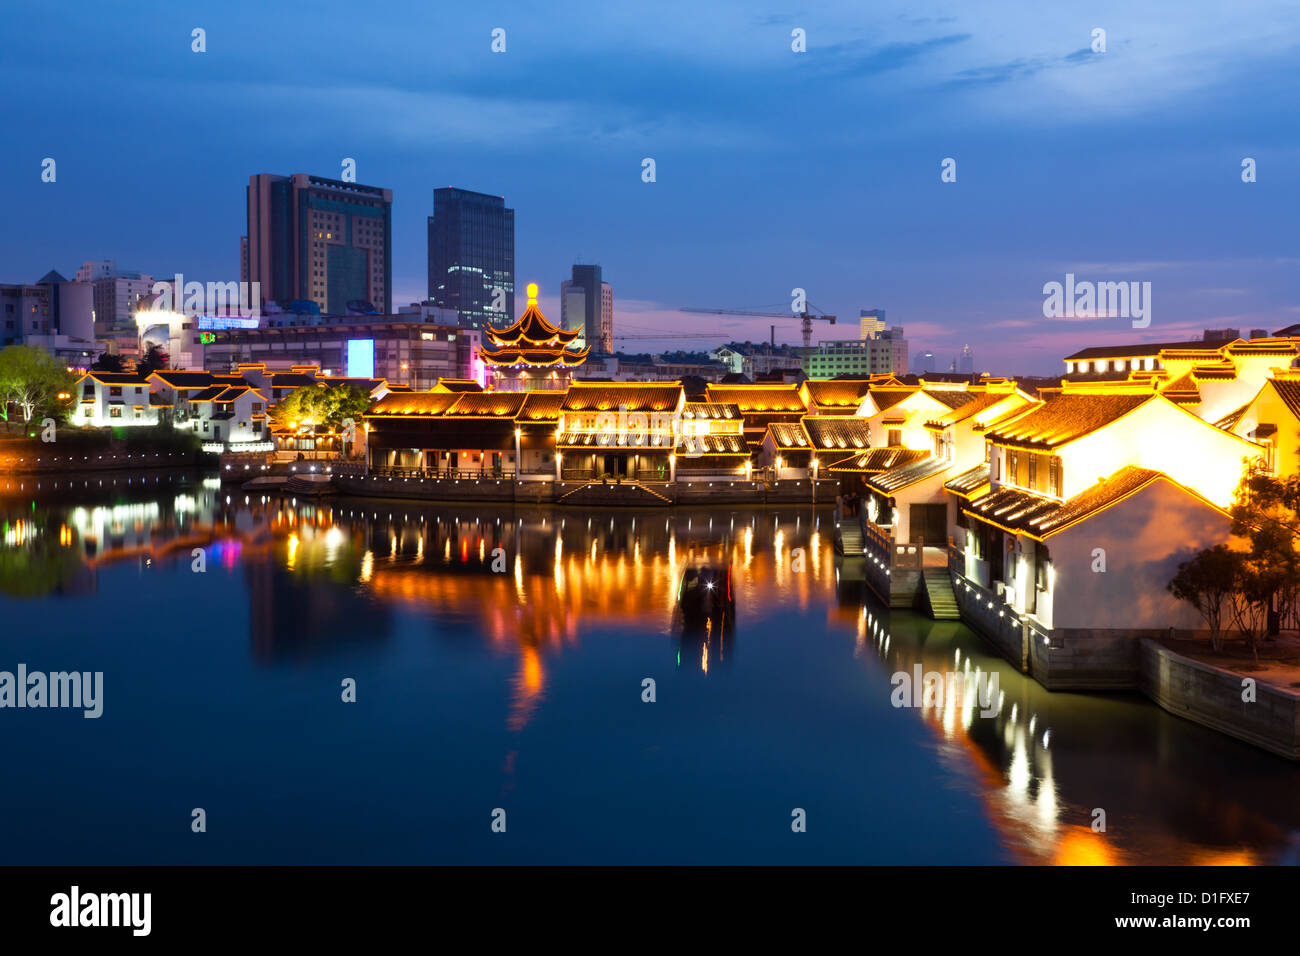 Beautiful night scene of the city Suzhou, China Stock Photo